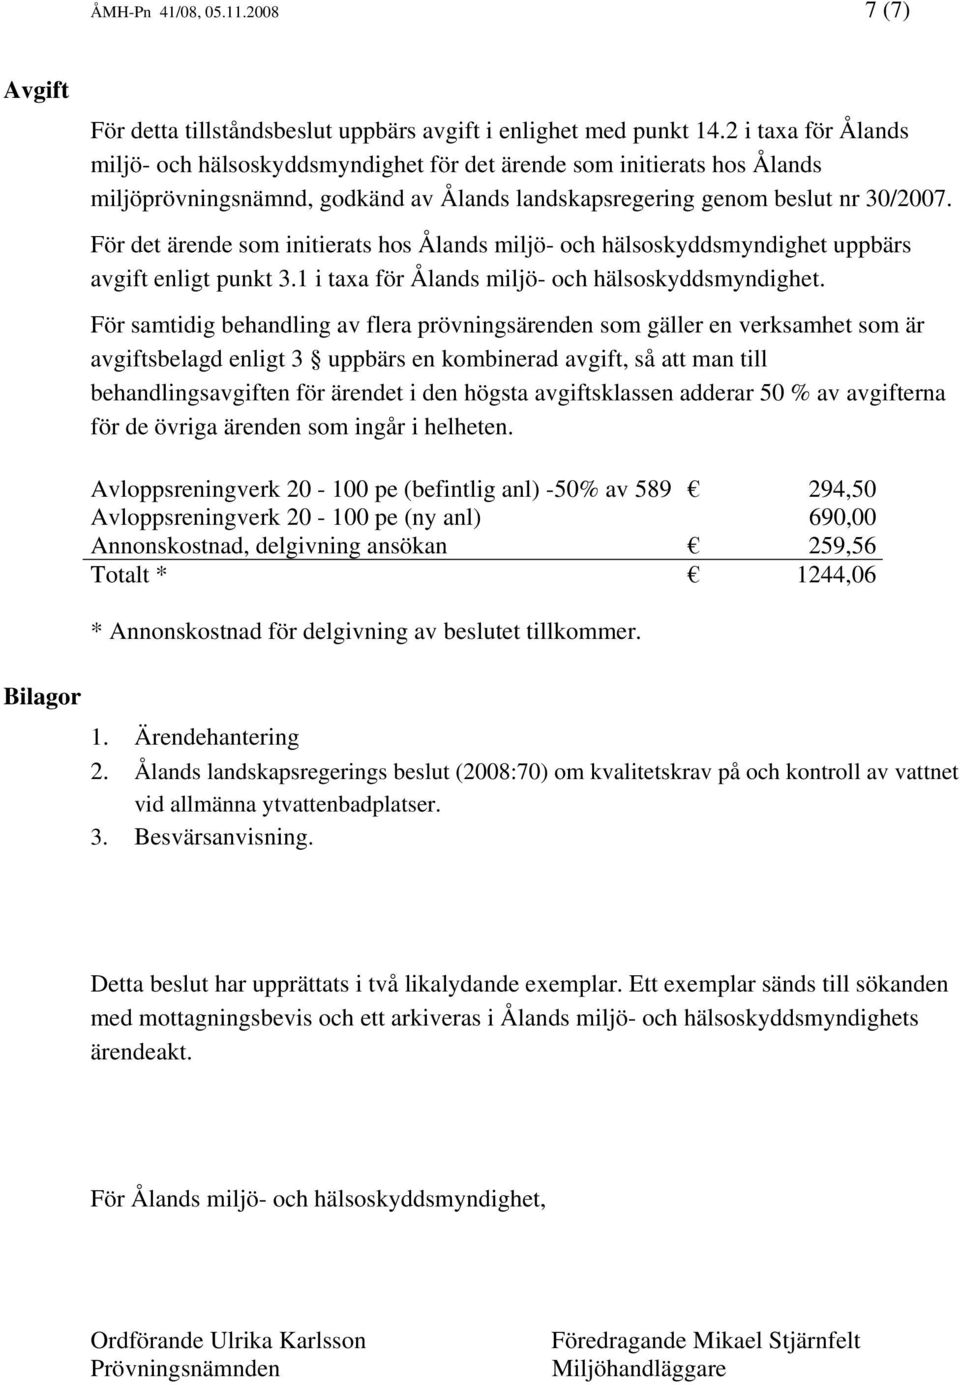 För det ärende som initierats hos Ålands miljö- och hälsoskyddsmyndighet uppbärs avgift enligt punkt 3.1 i taxa för Ålands miljö- och hälsoskyddsmyndighet.